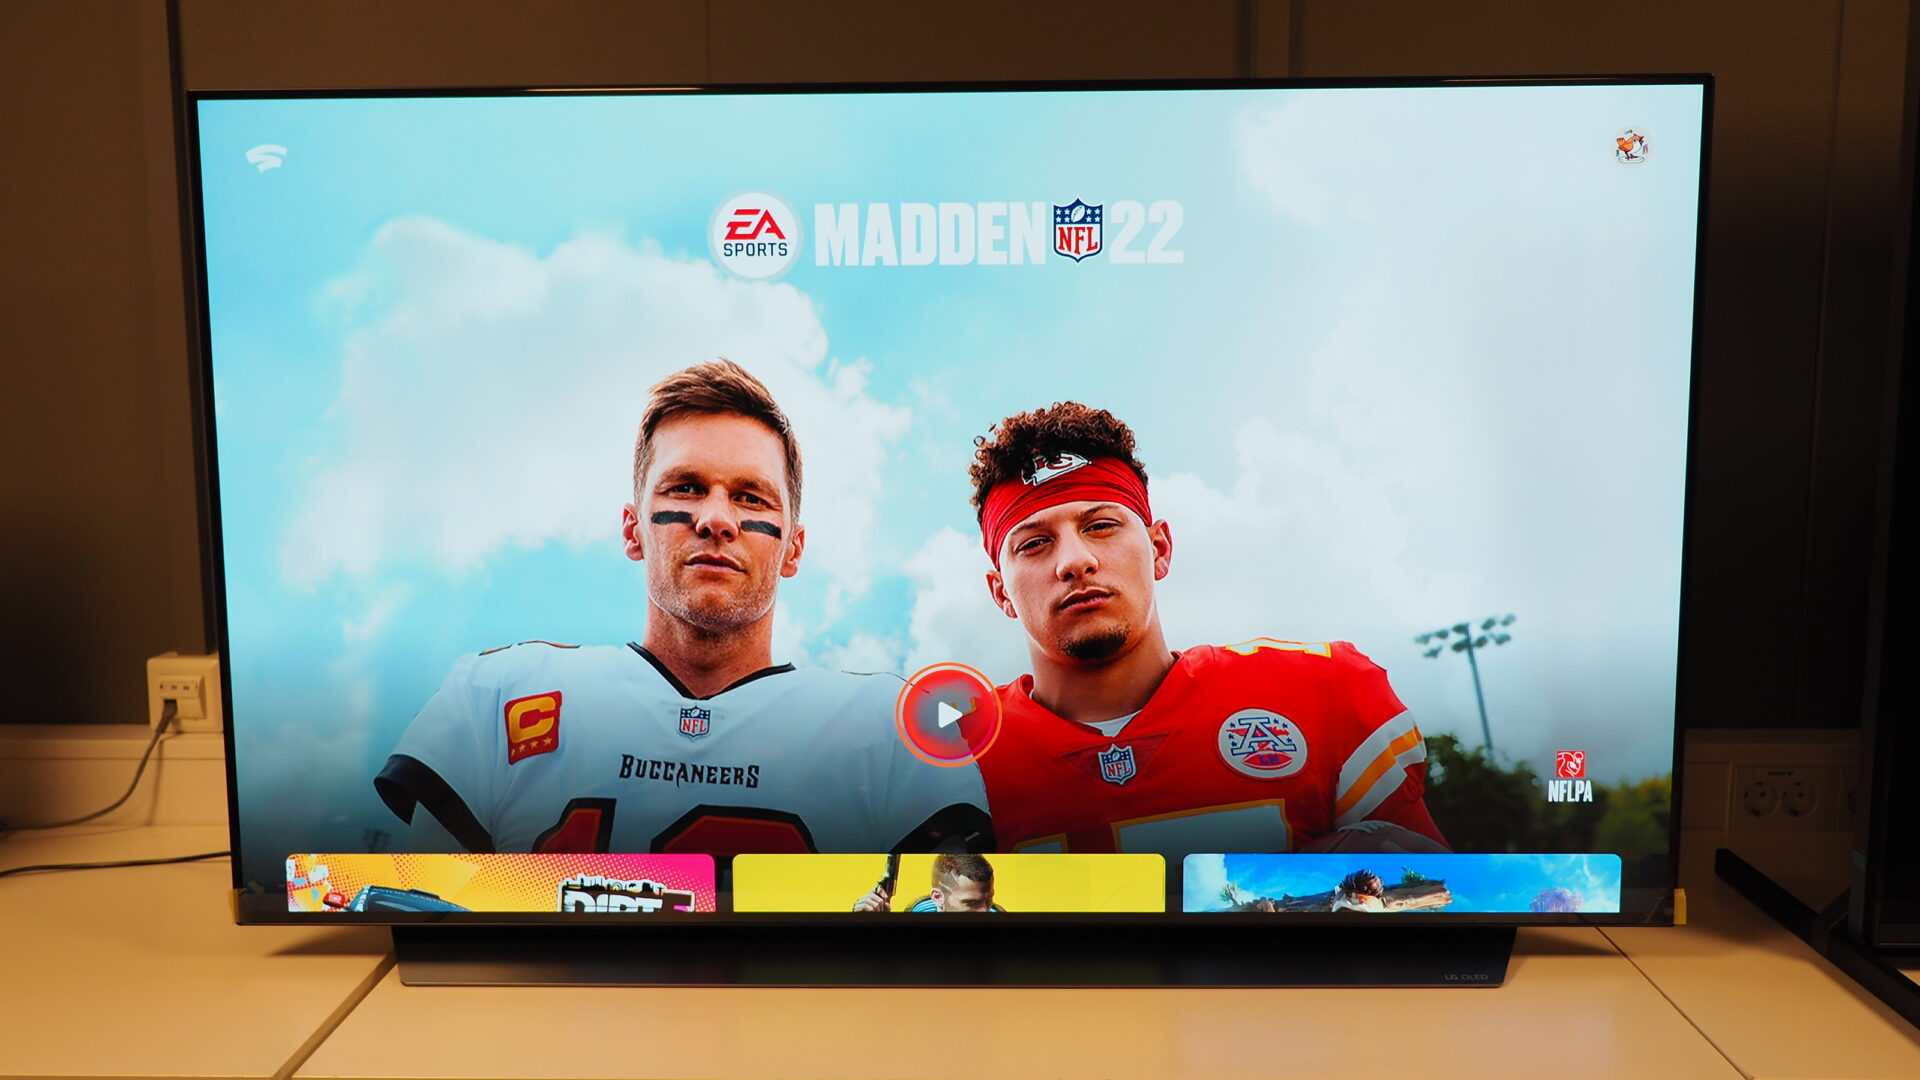 LG lanserer Google Stadia til nyere TV-modeller